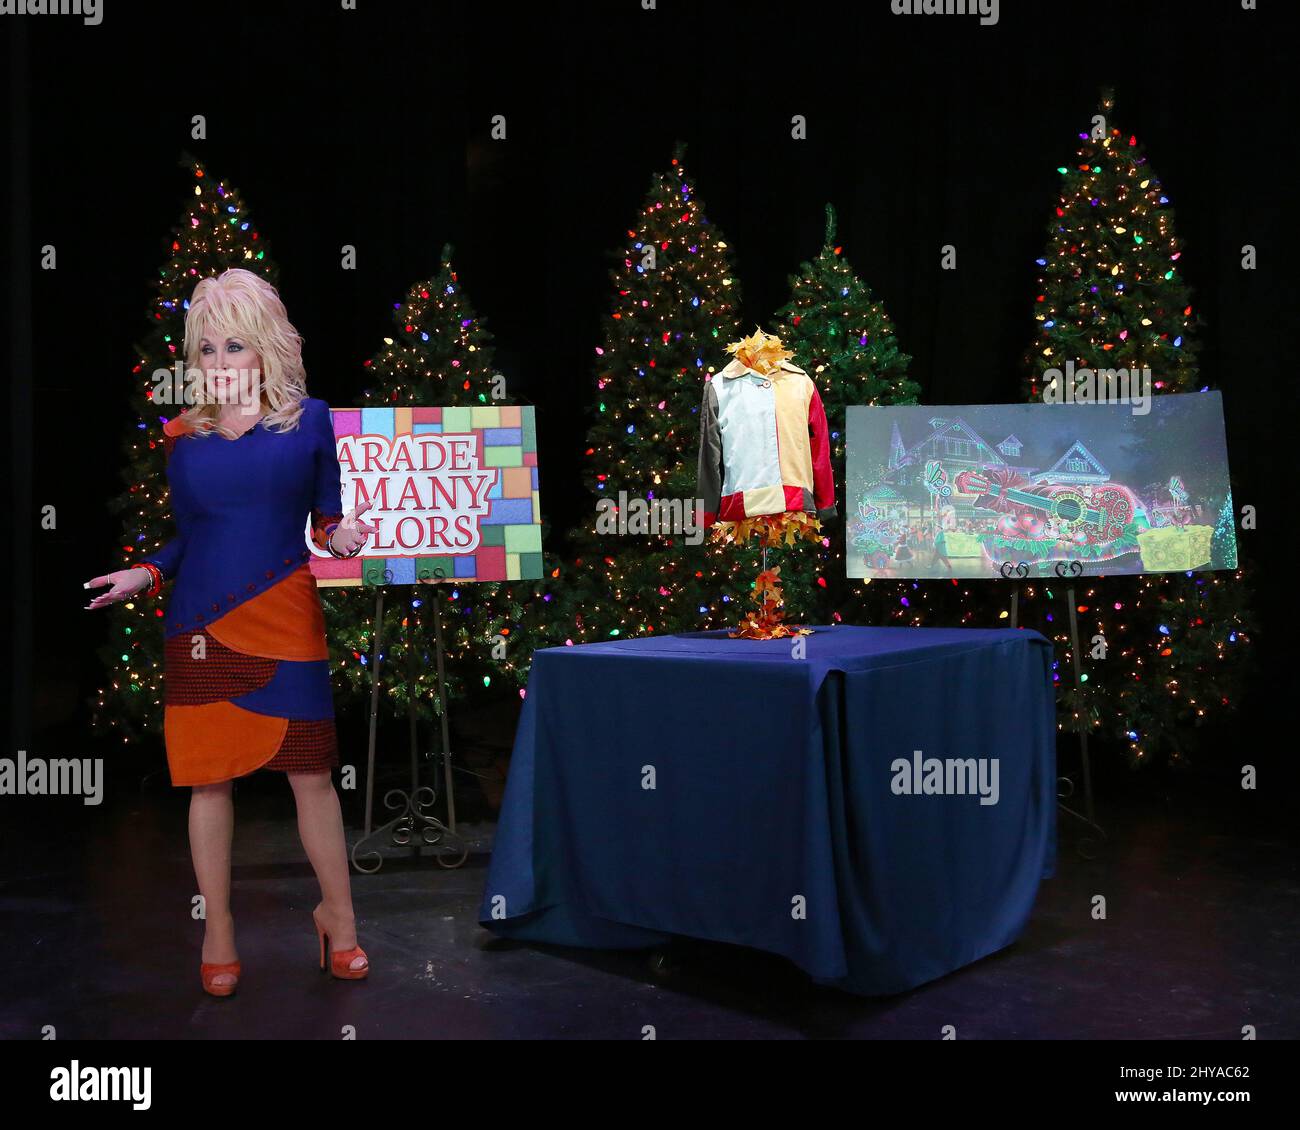 Dolly Parton lors de la conférence de presse annonce de la « Parade of Many Colours » qui s'est tenue à Dollywood Banque D'Images